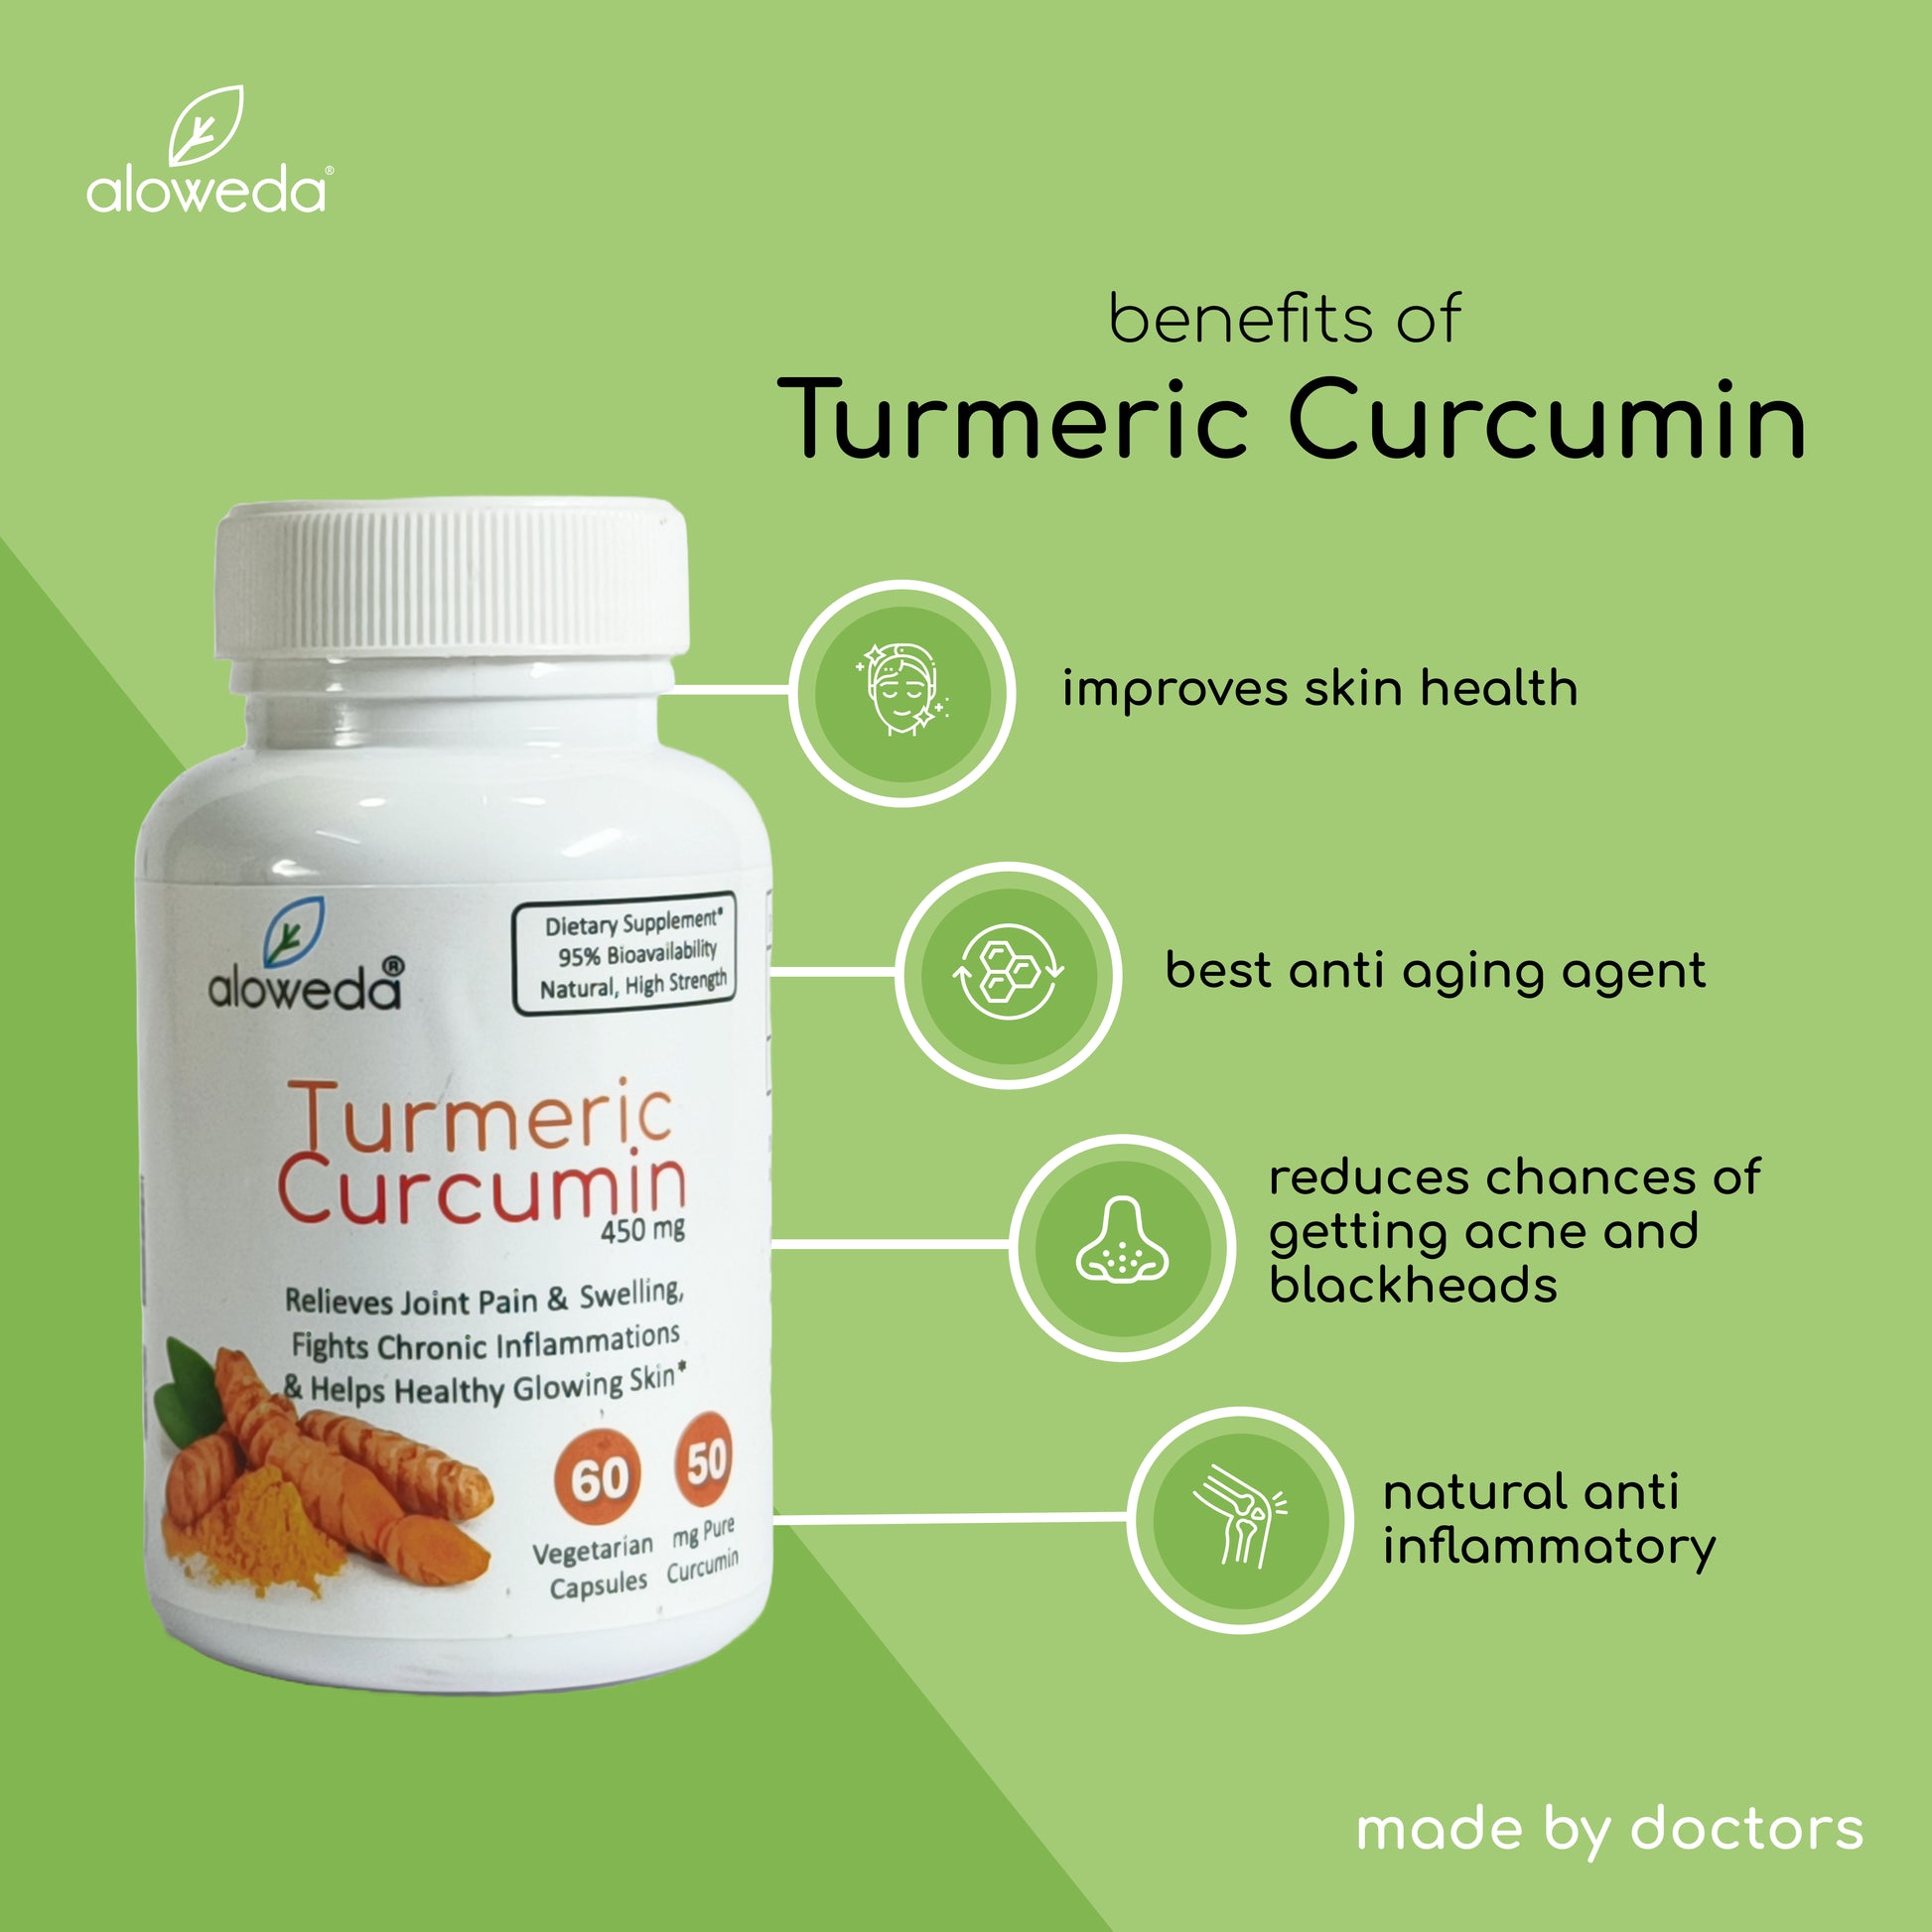 Benefits of Turmeric Curcumin